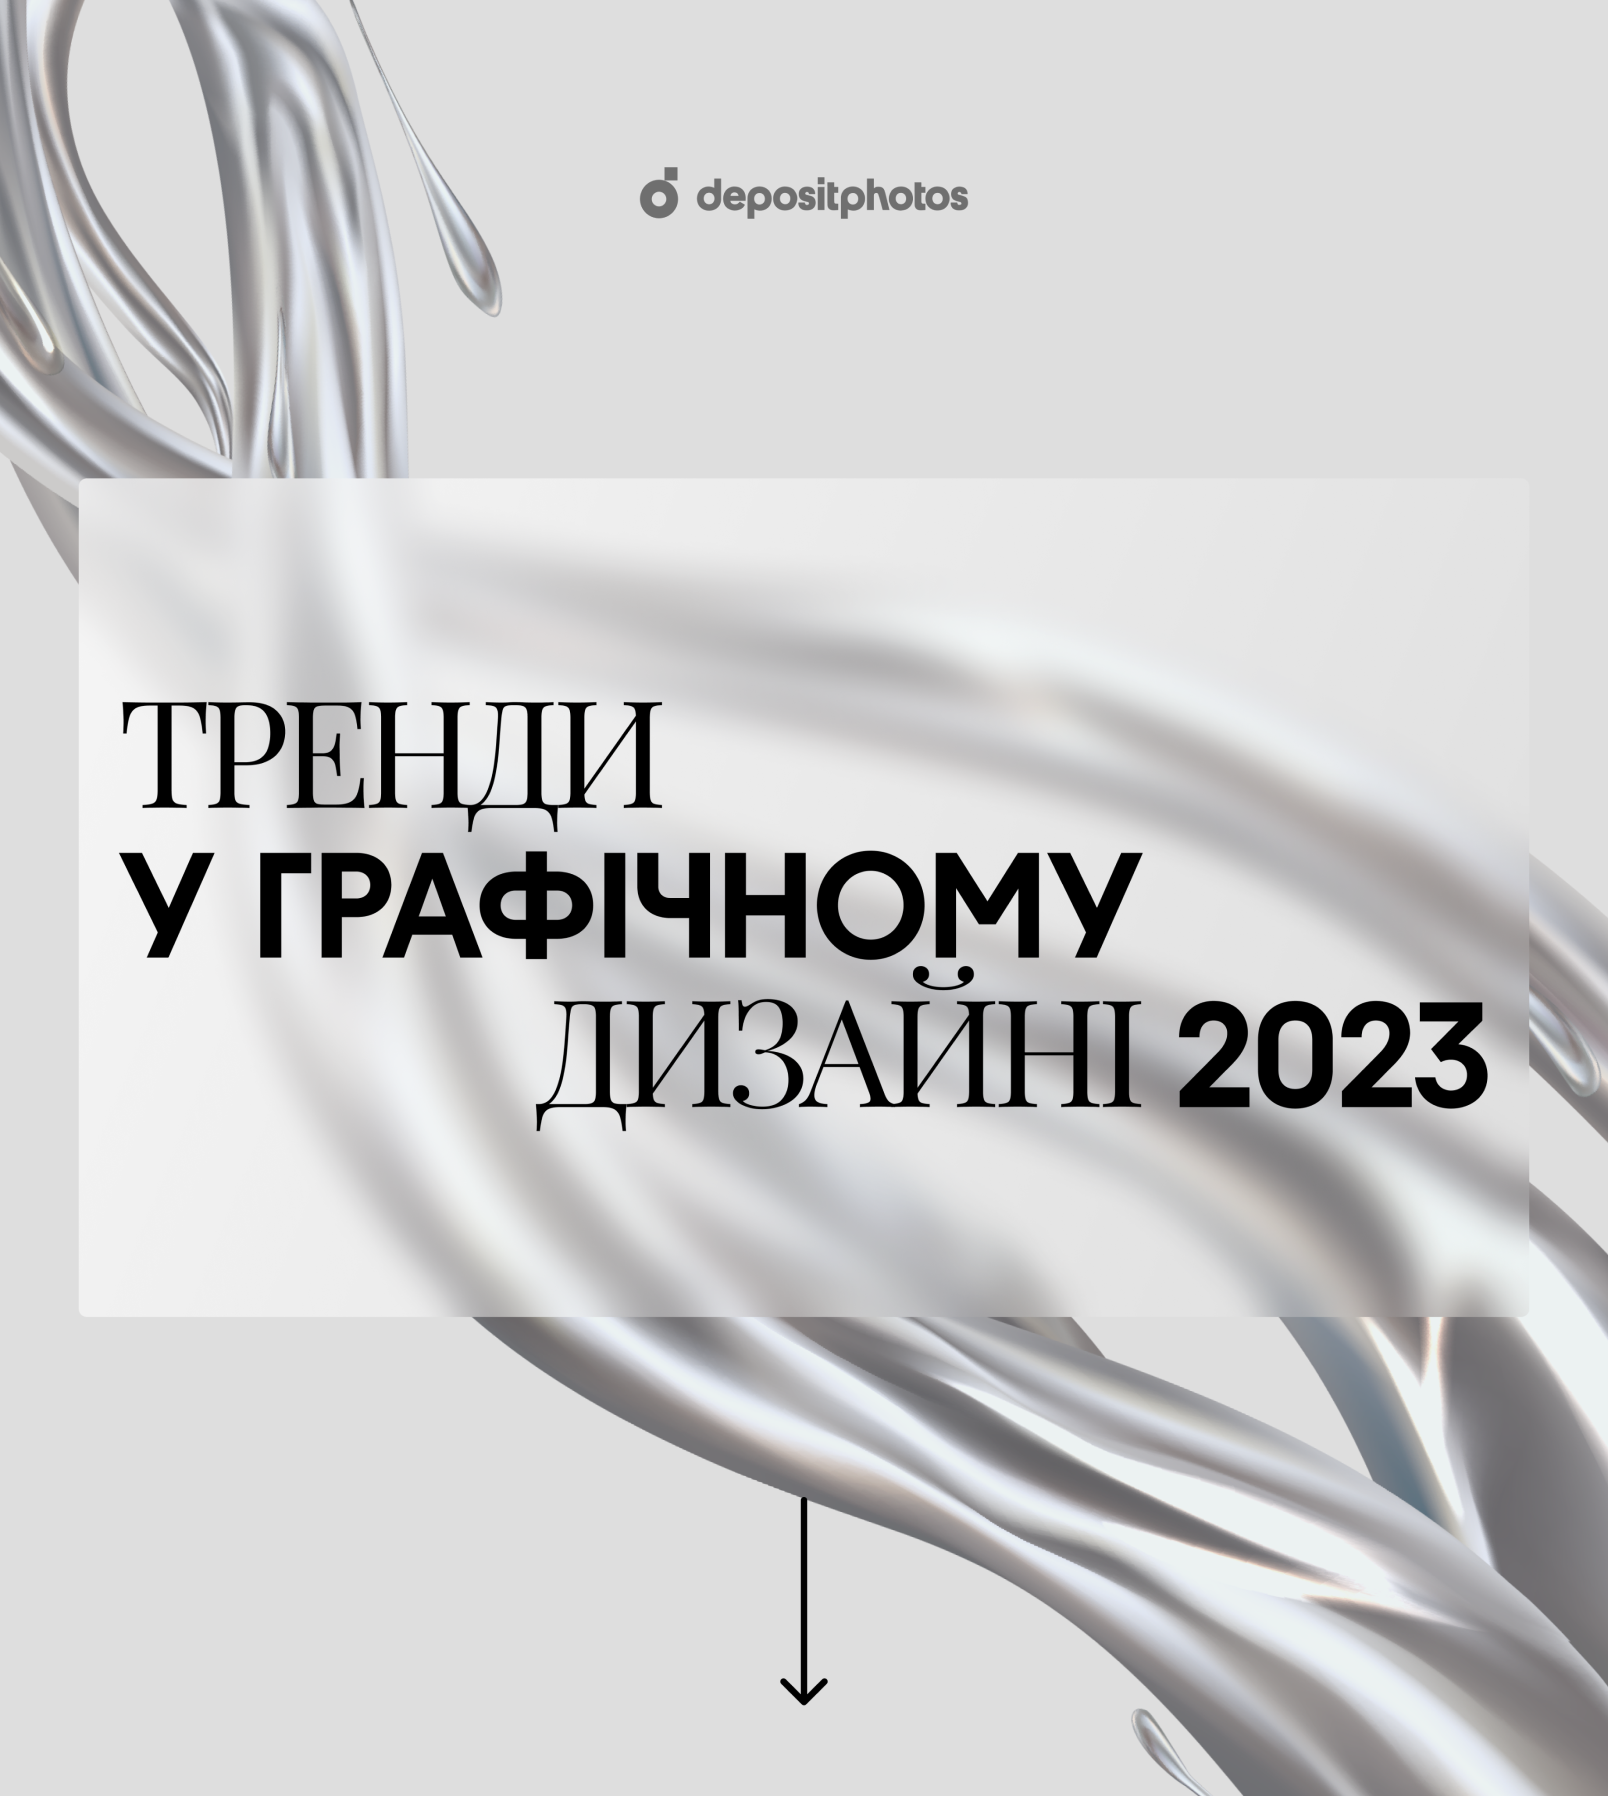 Тренди у графічному дизайні 2023 [Інфографіка]